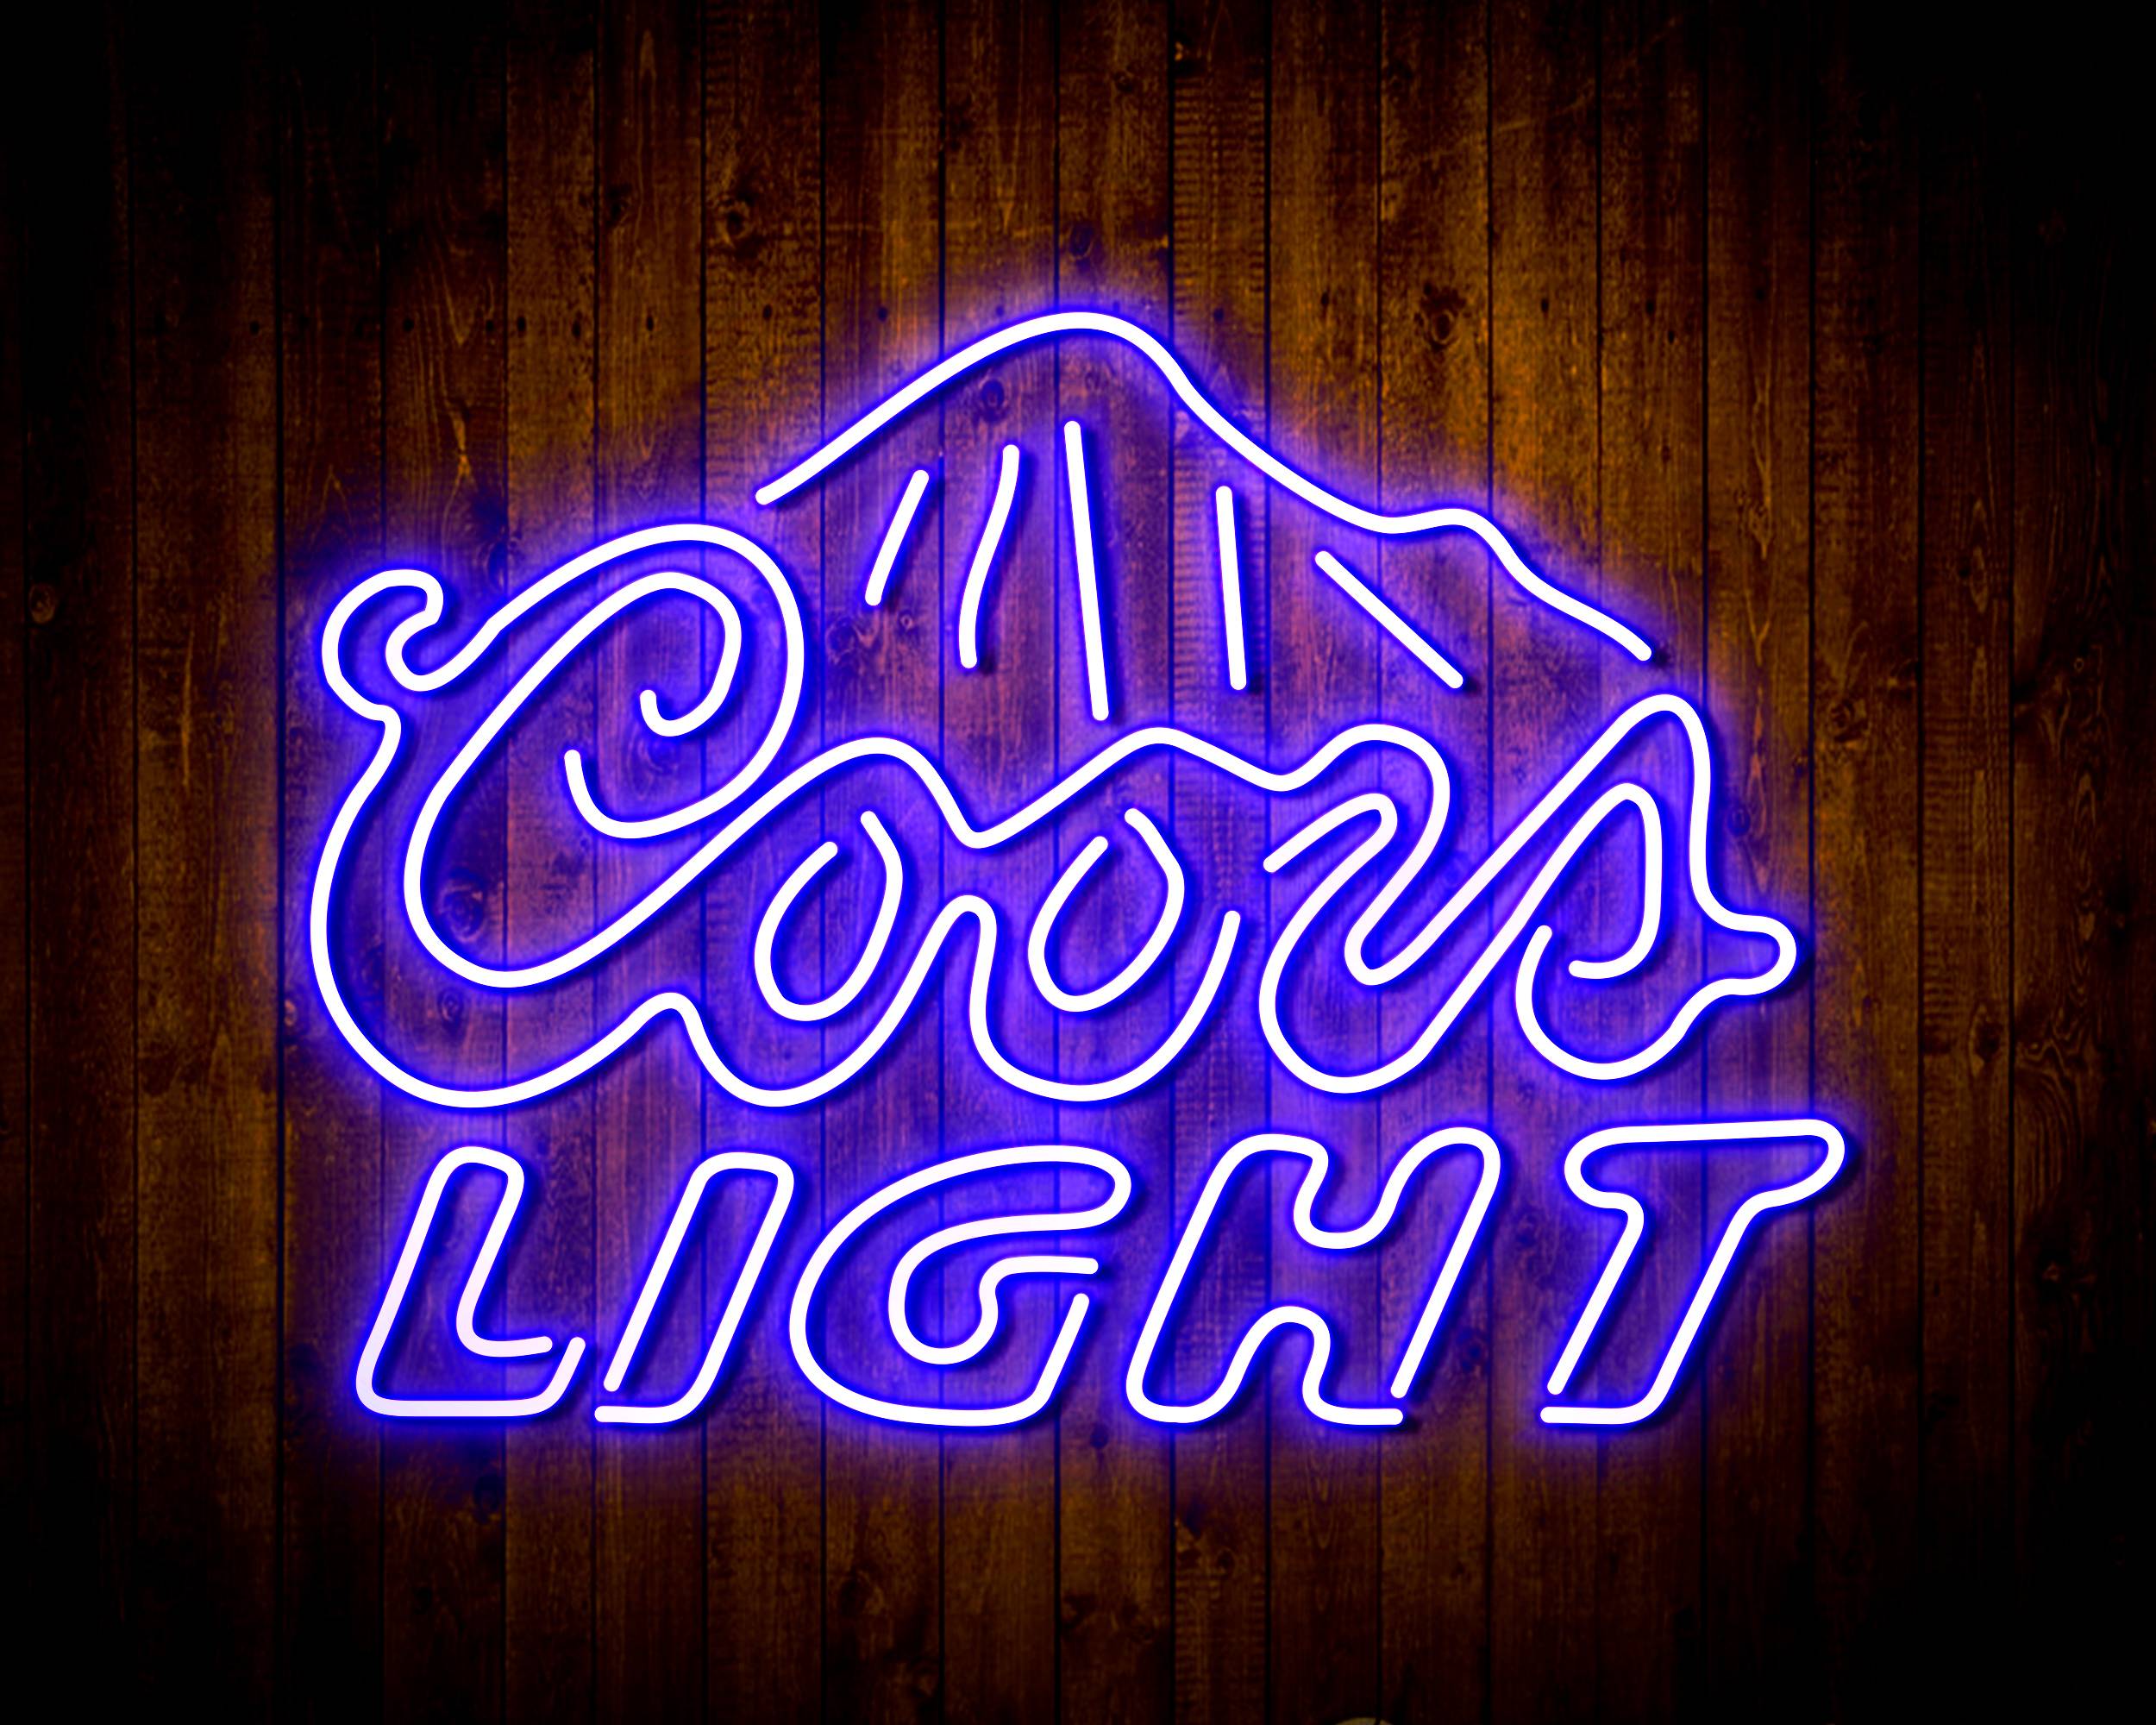 Coors Light 2 Handmade LED Neon Light Sign